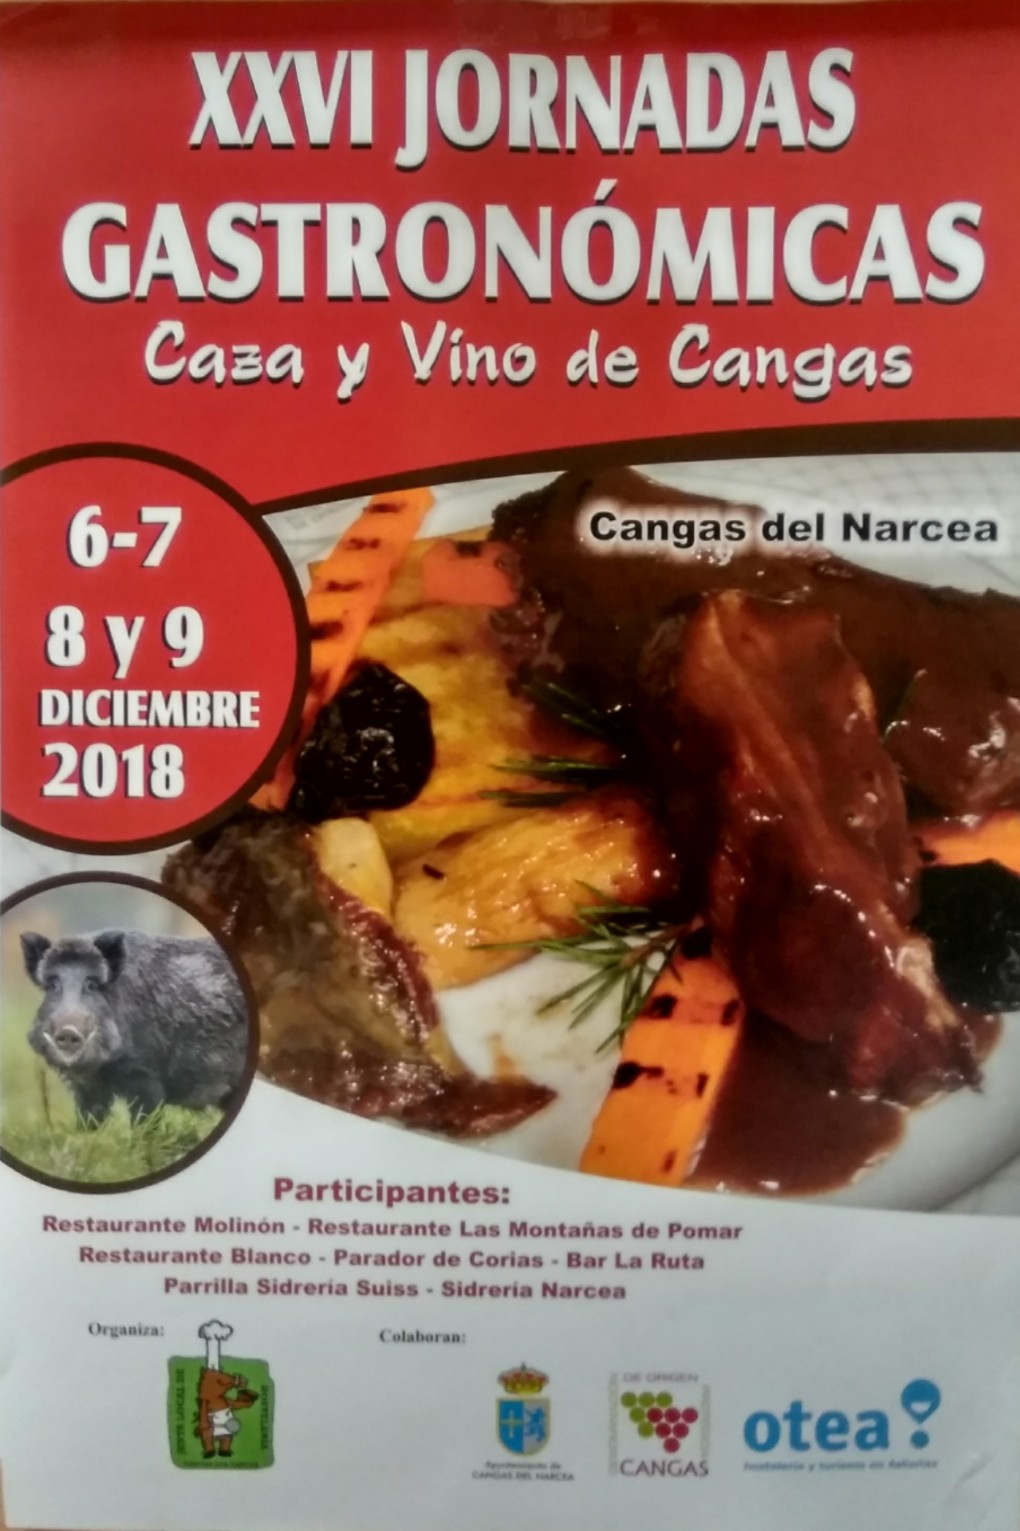 Jornadas Gastronómicas Caza y Vino en Cangas del Narcea